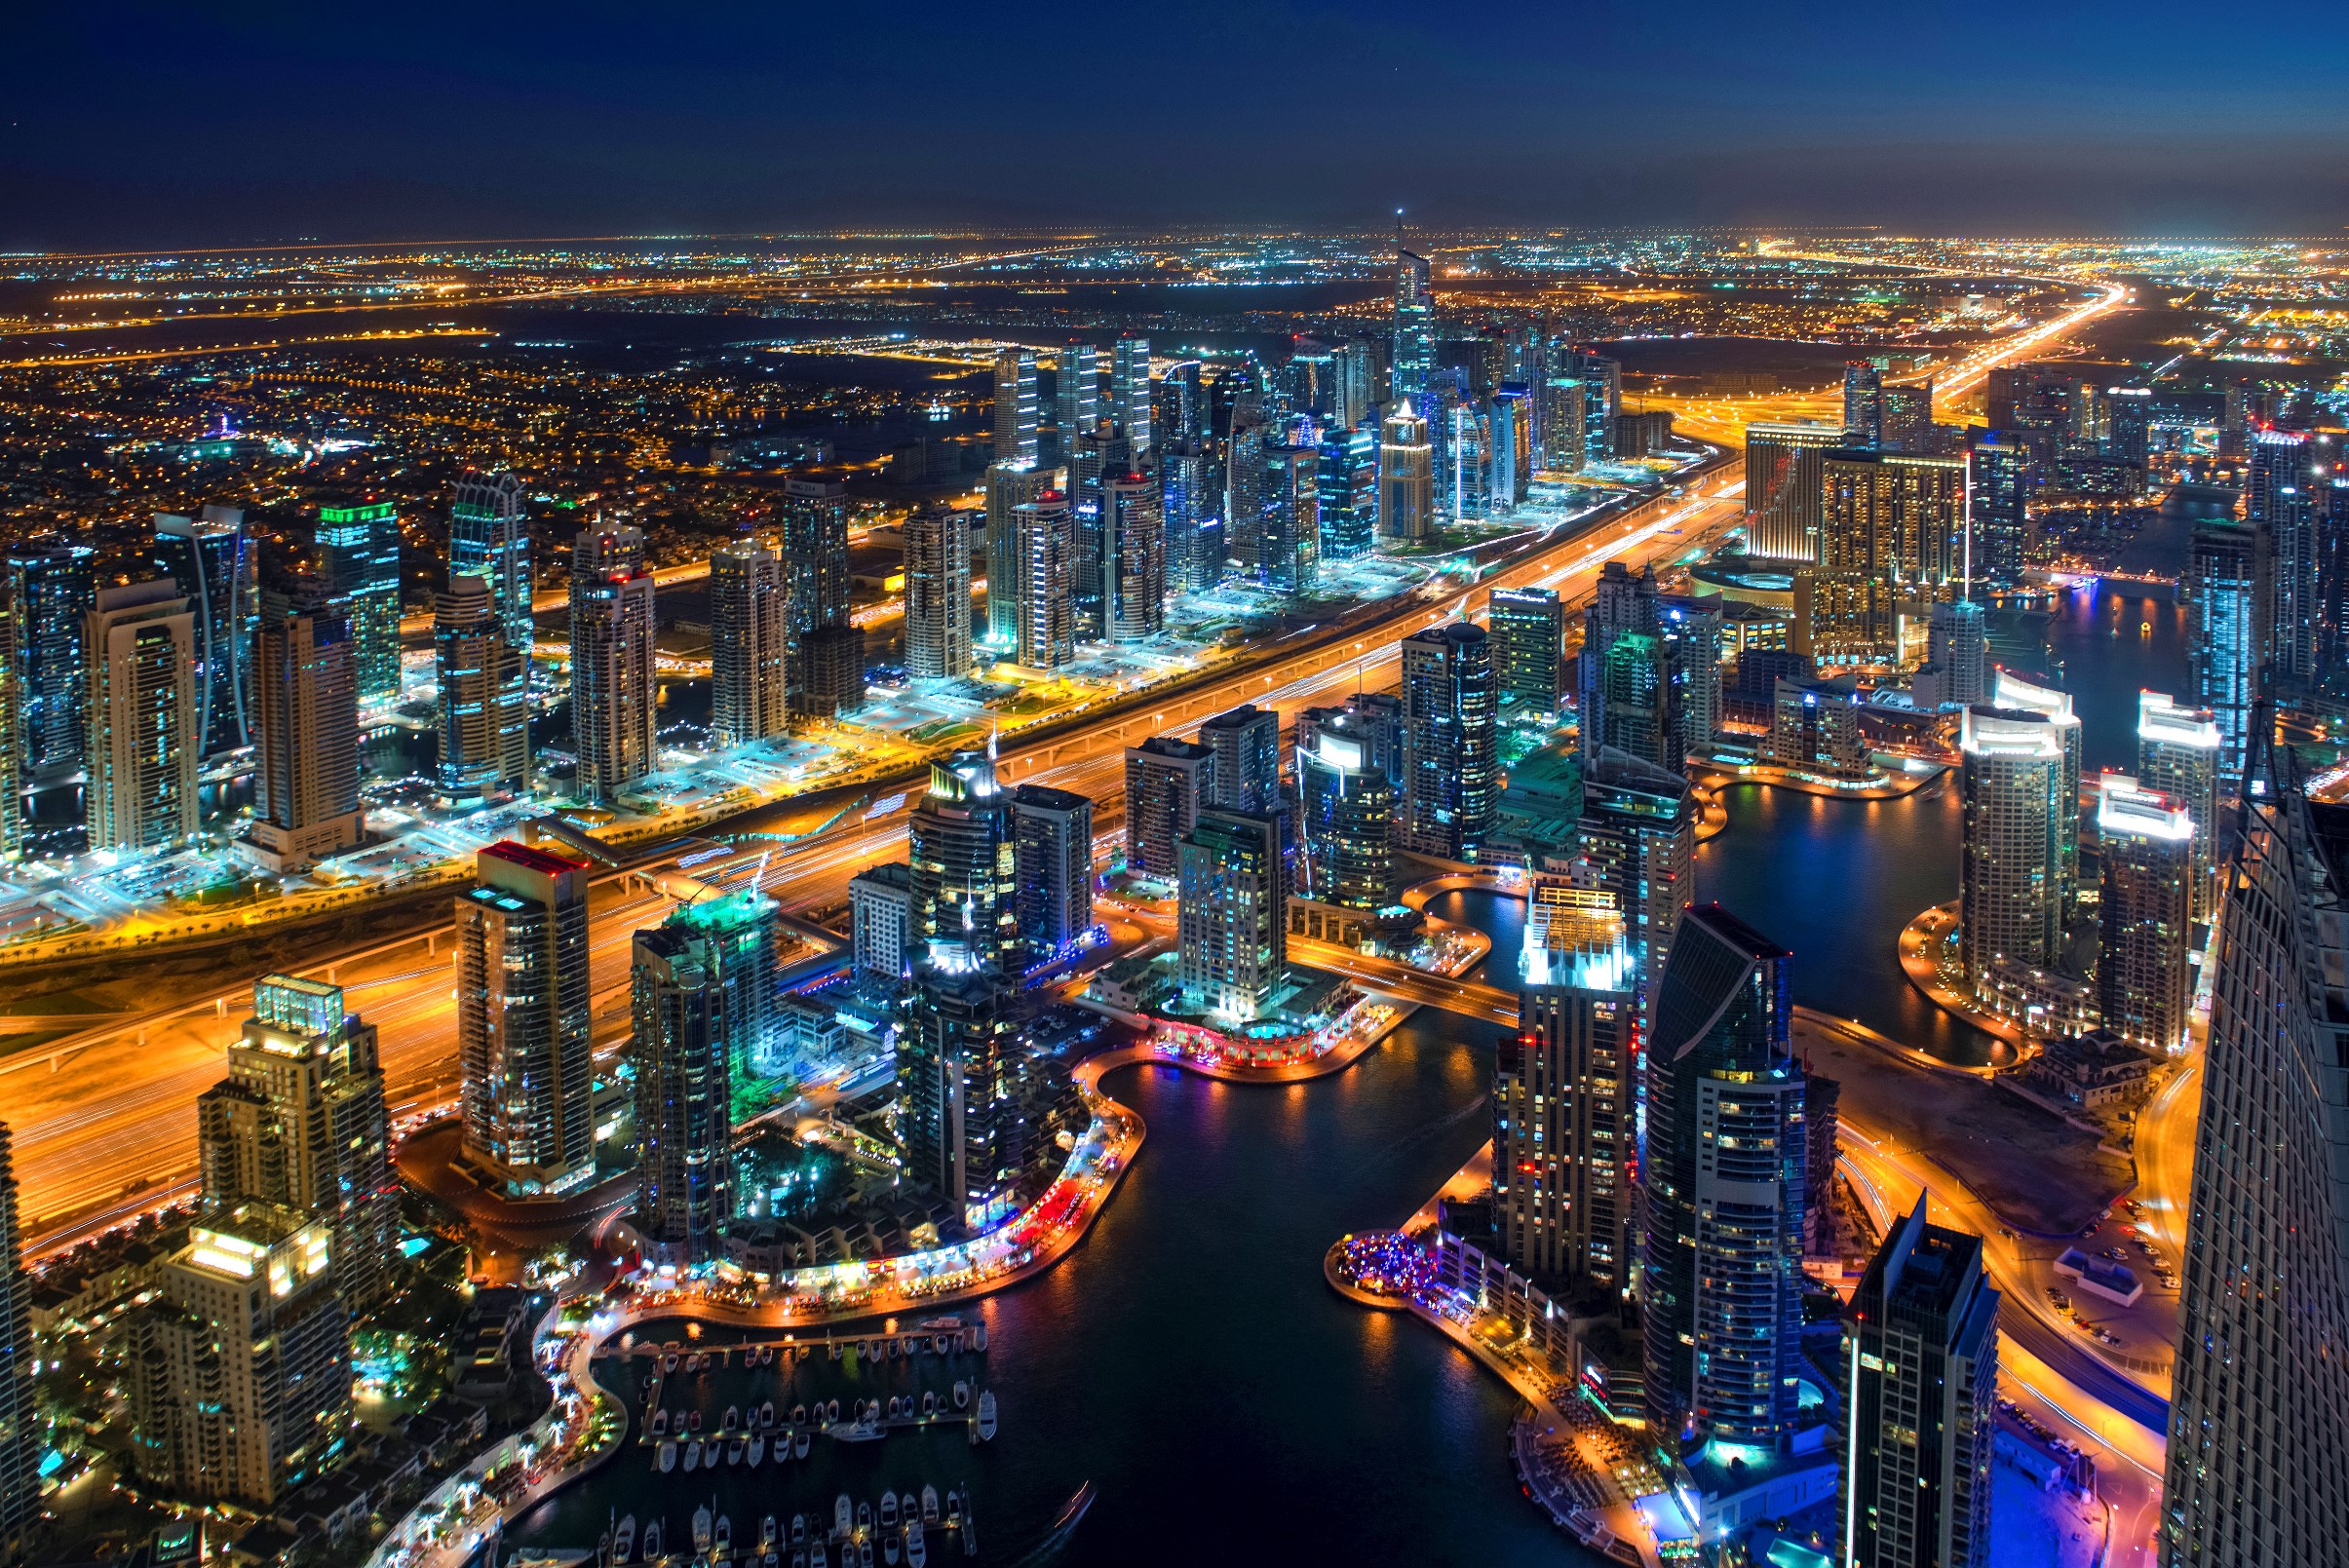 Dubai launches 5-year retirement visa